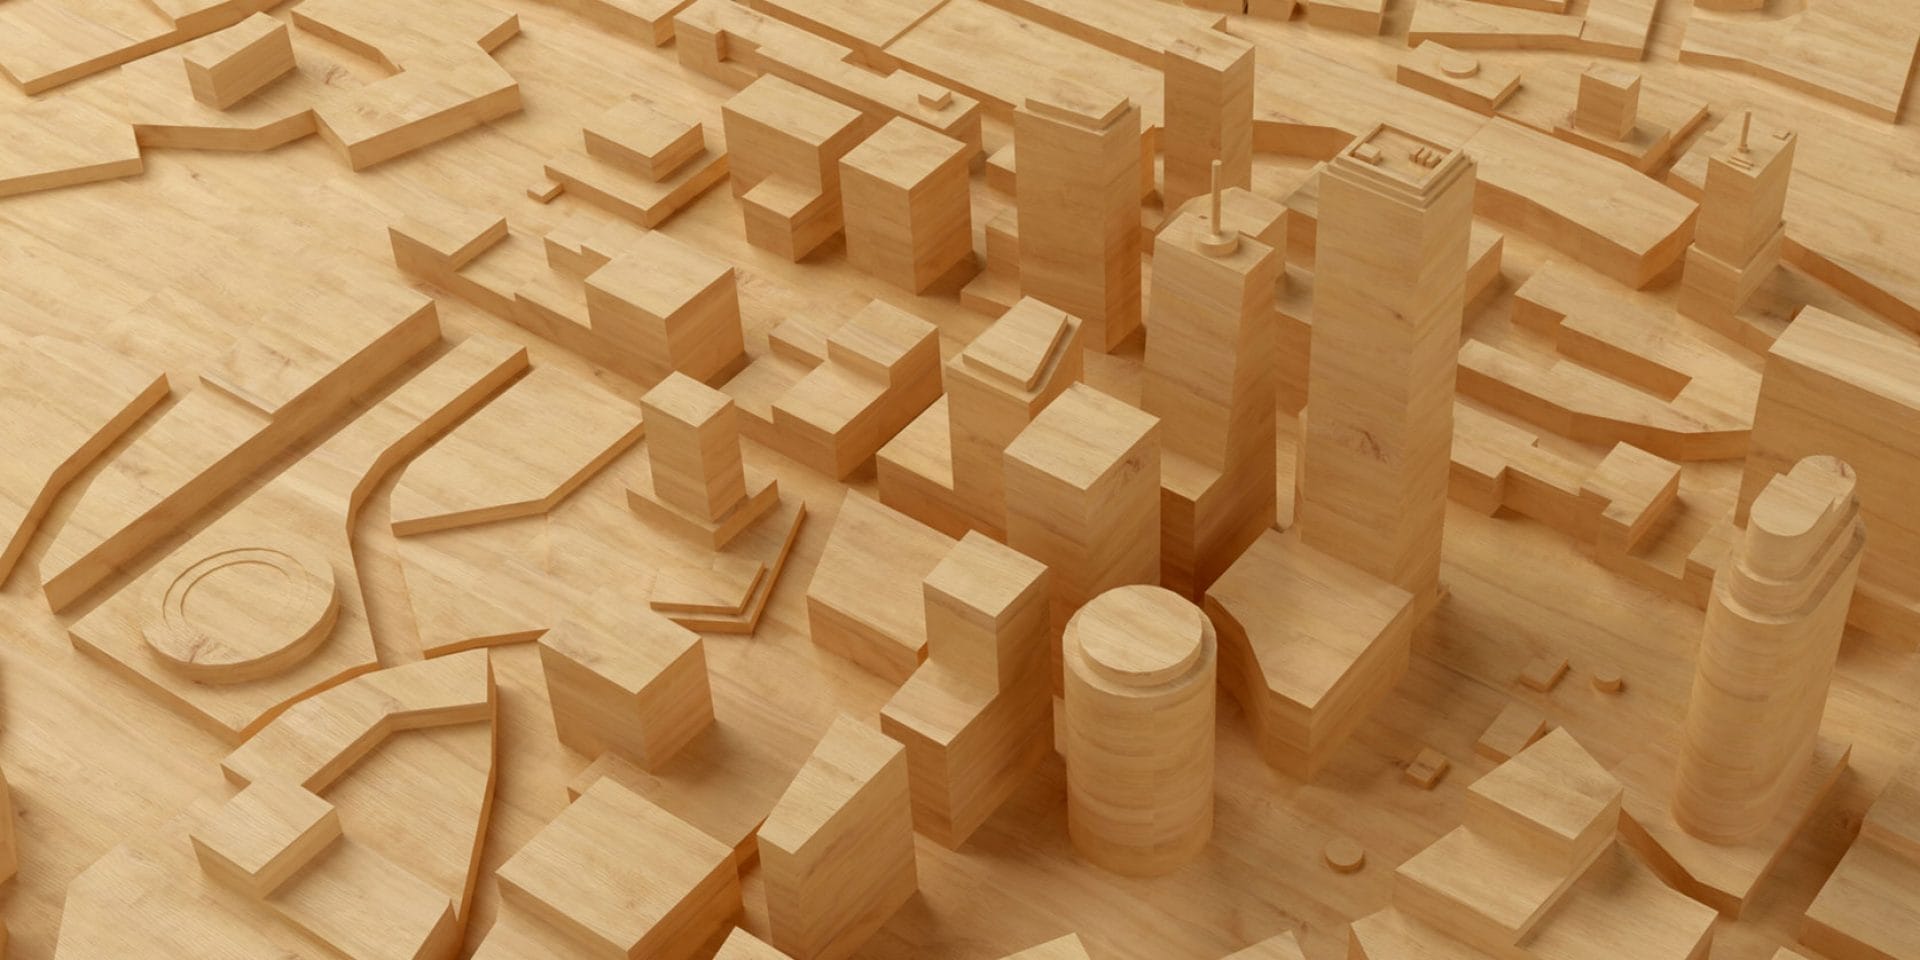 Maquette en bois d'une ville